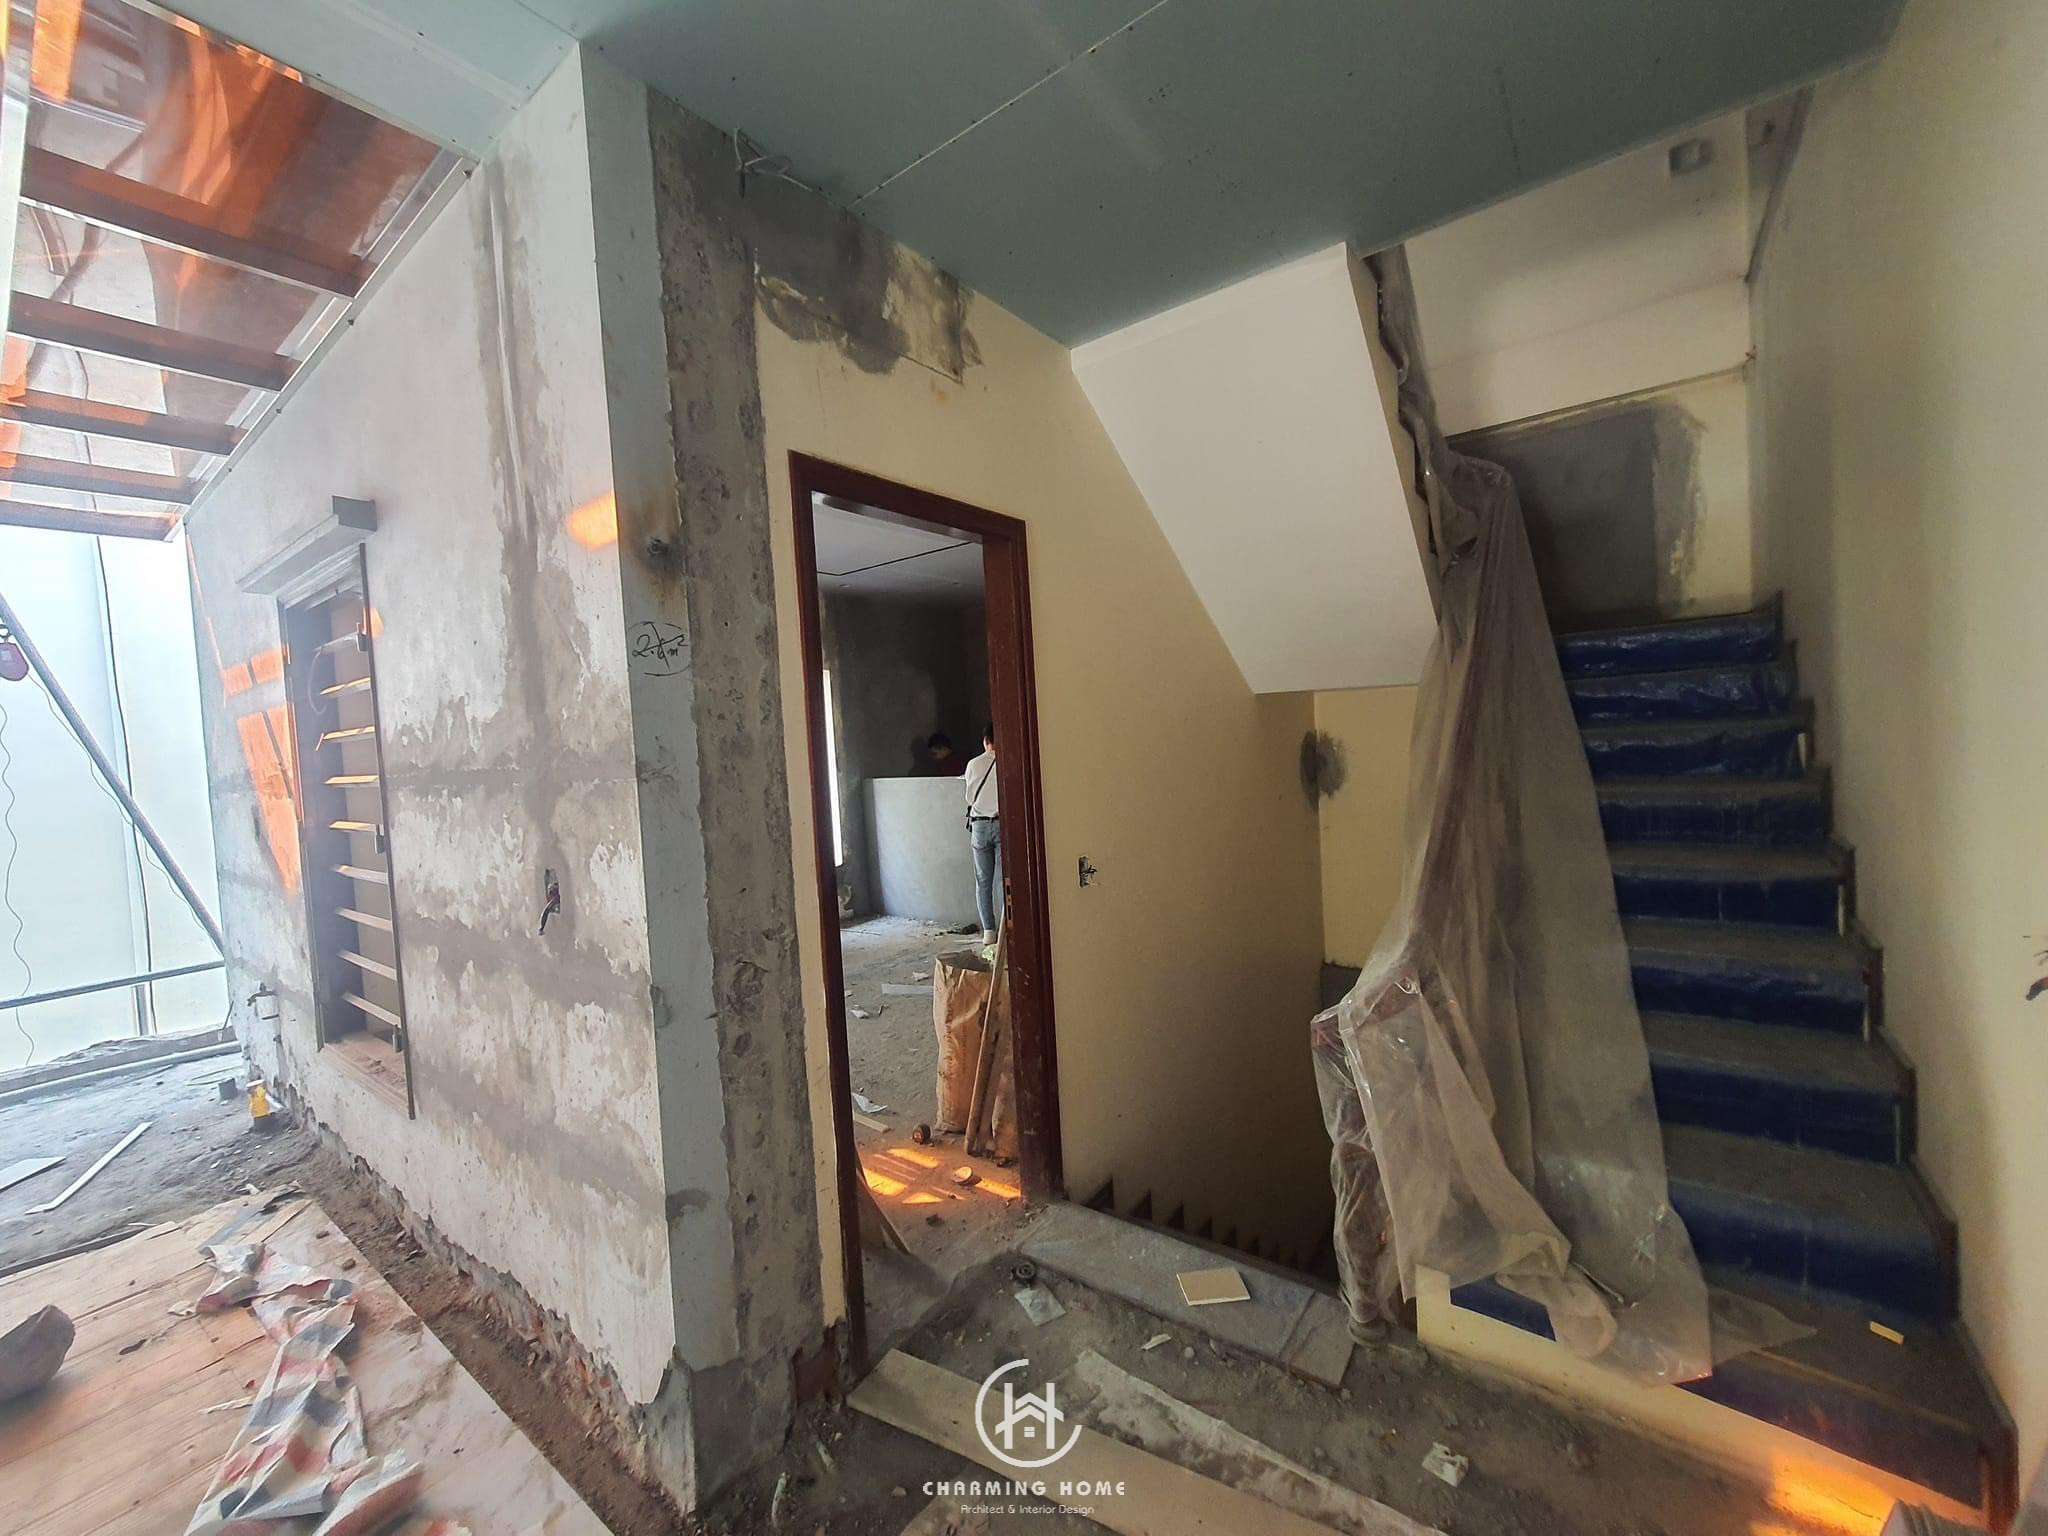 Kinh nghiệm sửa chữa nhà cũ thành nhà mới hiệu quả bạn cần biết (2)